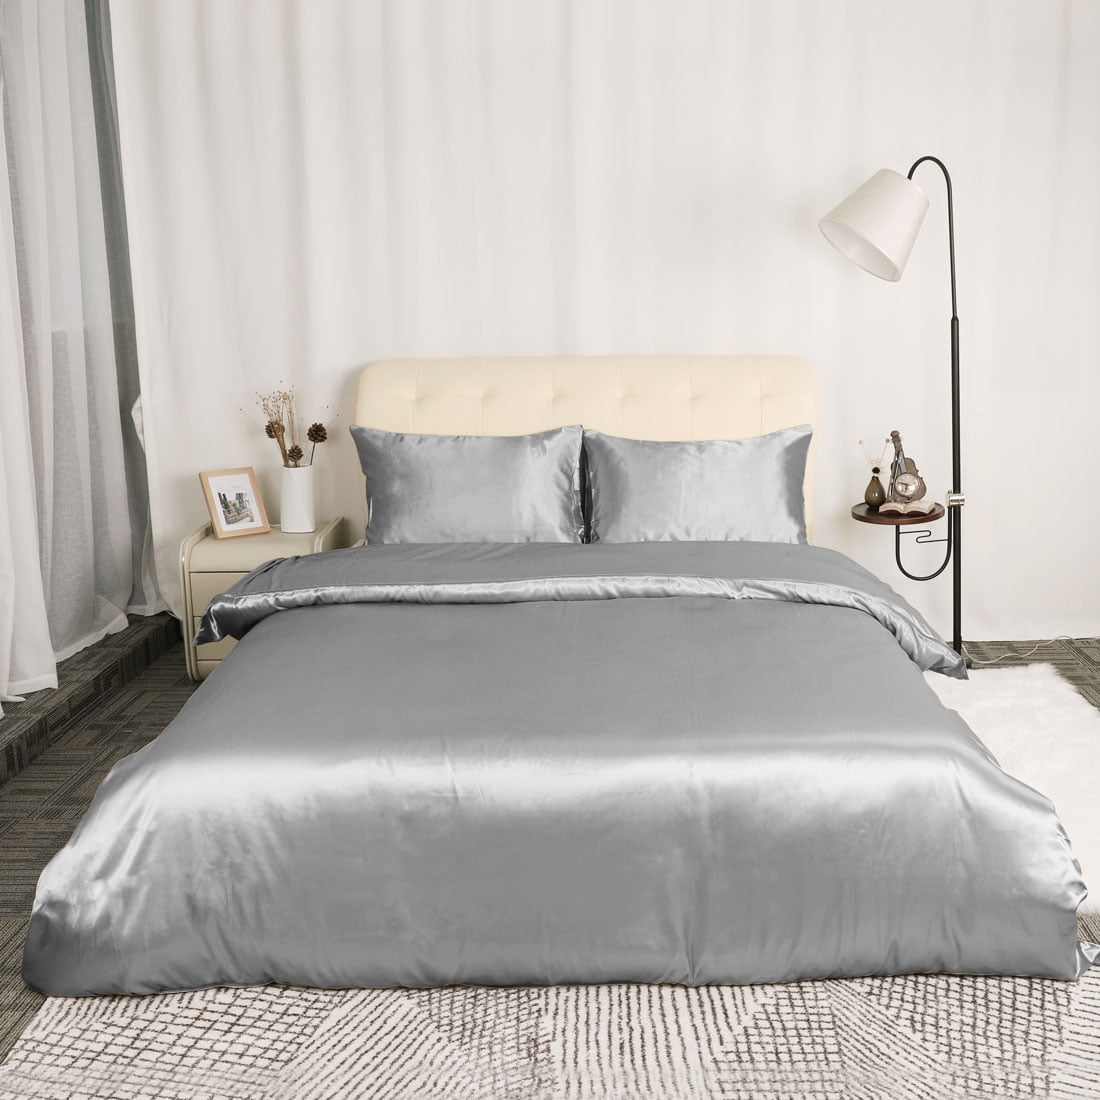 Satin Silk Comforter Duvet Cover Pillowcases Bedding Set Gray Queen